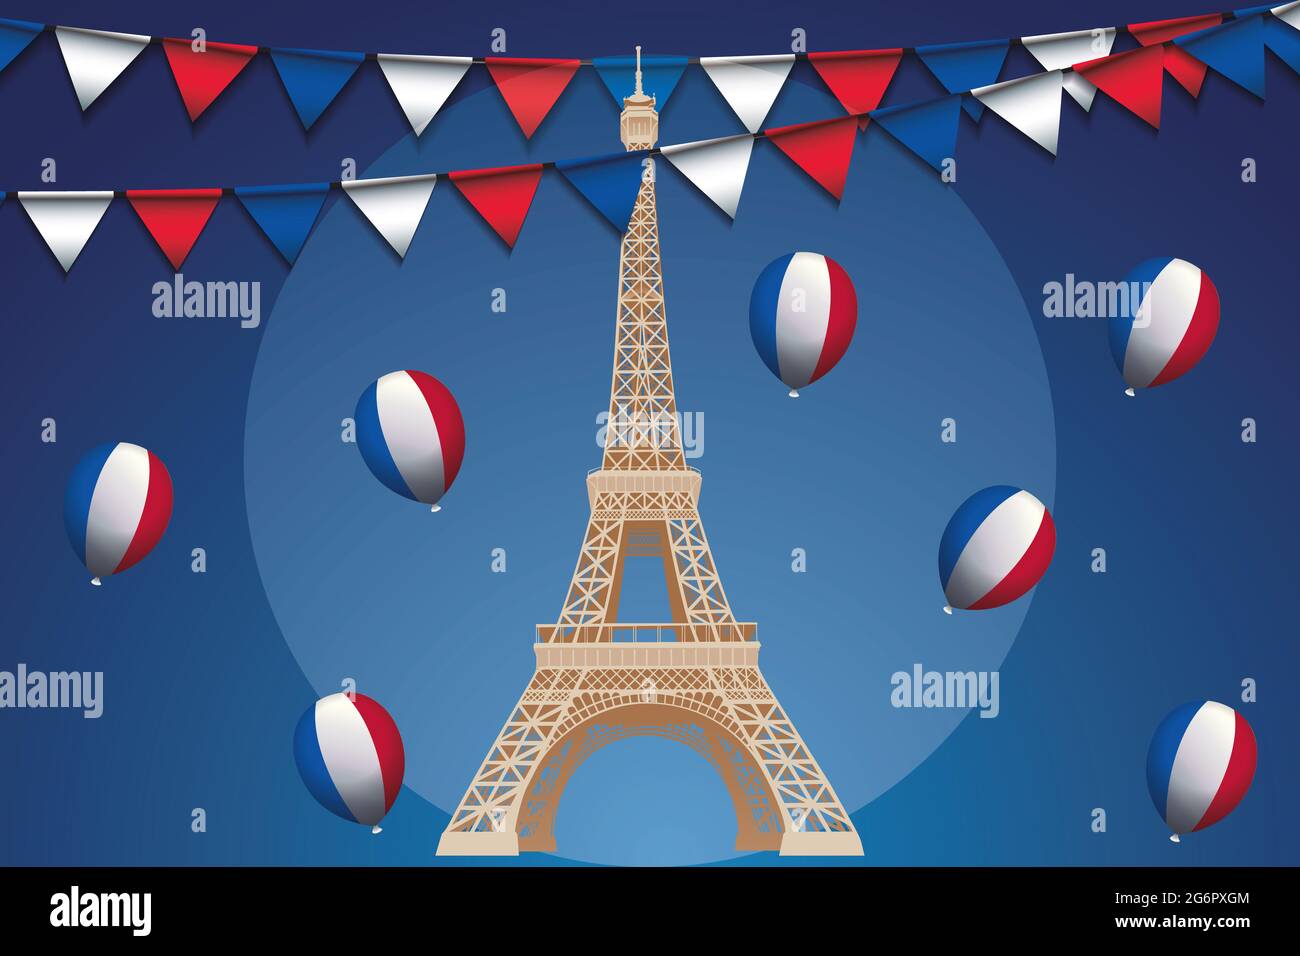 Bastille-Tag 14 1789. juli - Eiffelturm im Fokus Frankreich blau-weiß-Rouge - Illustration mit verschiedenen französischen Elementen - nützlich für Designer Stockfoto